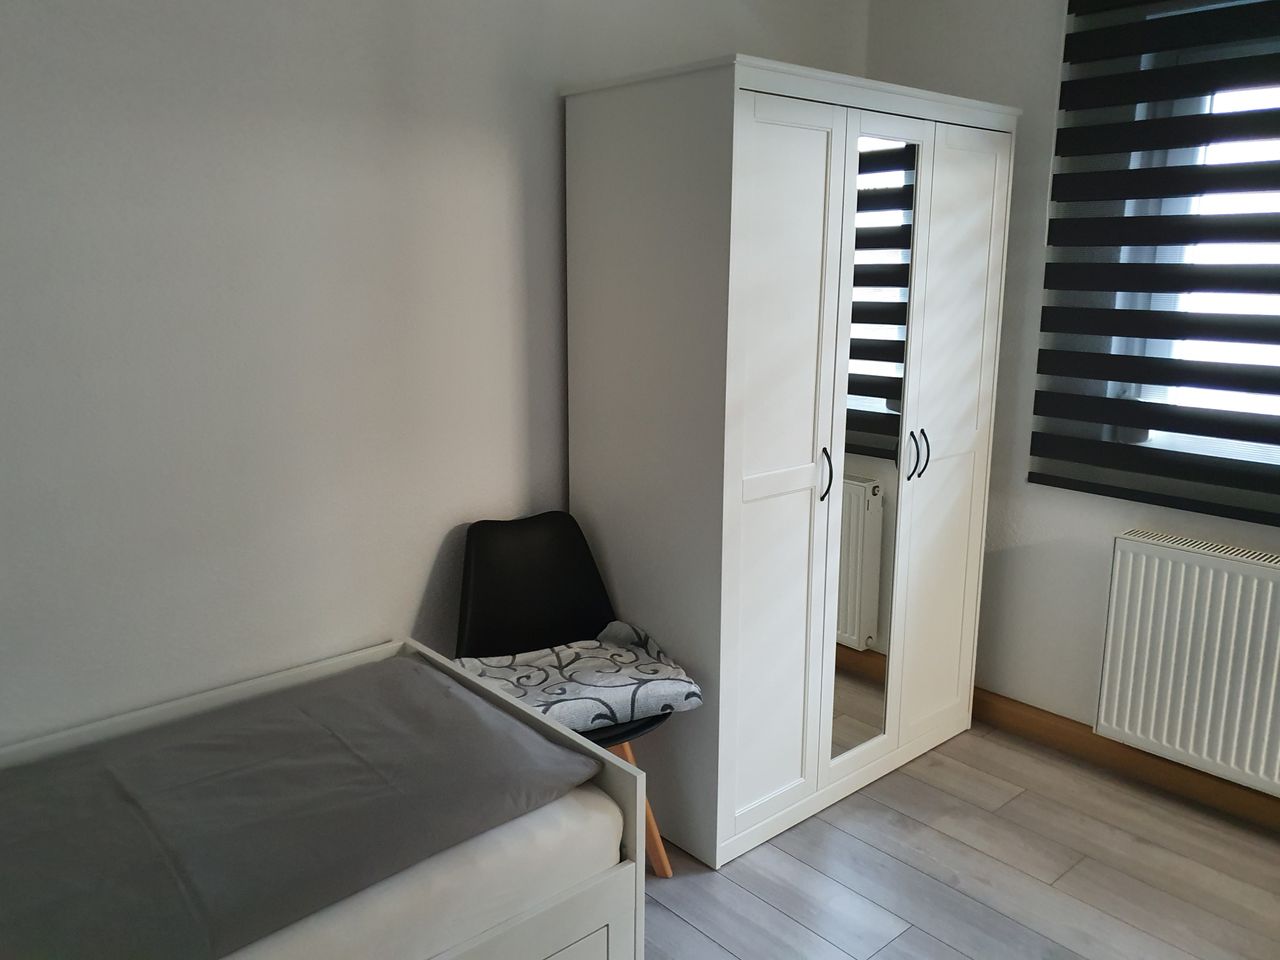 Modernly little apartment in Stuttgart